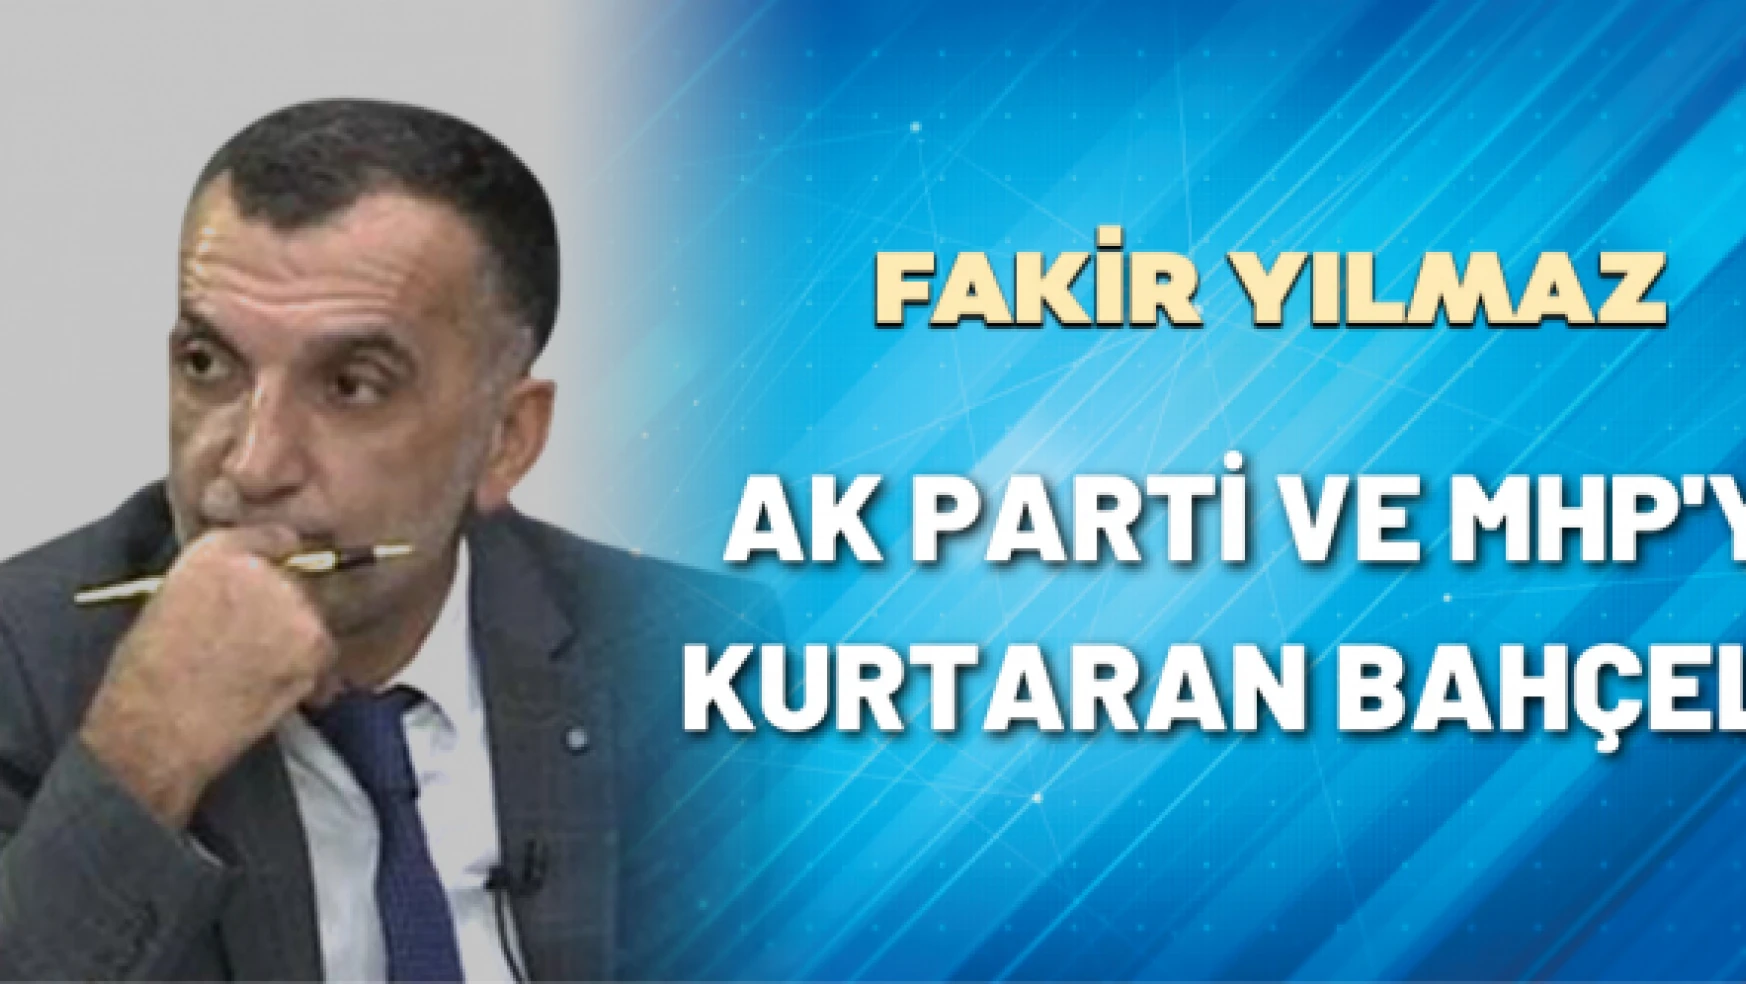 Gazeteci Fakir Yılmaz yazdı: AK Parti ve MHP'yi kurtaran Bahçeli